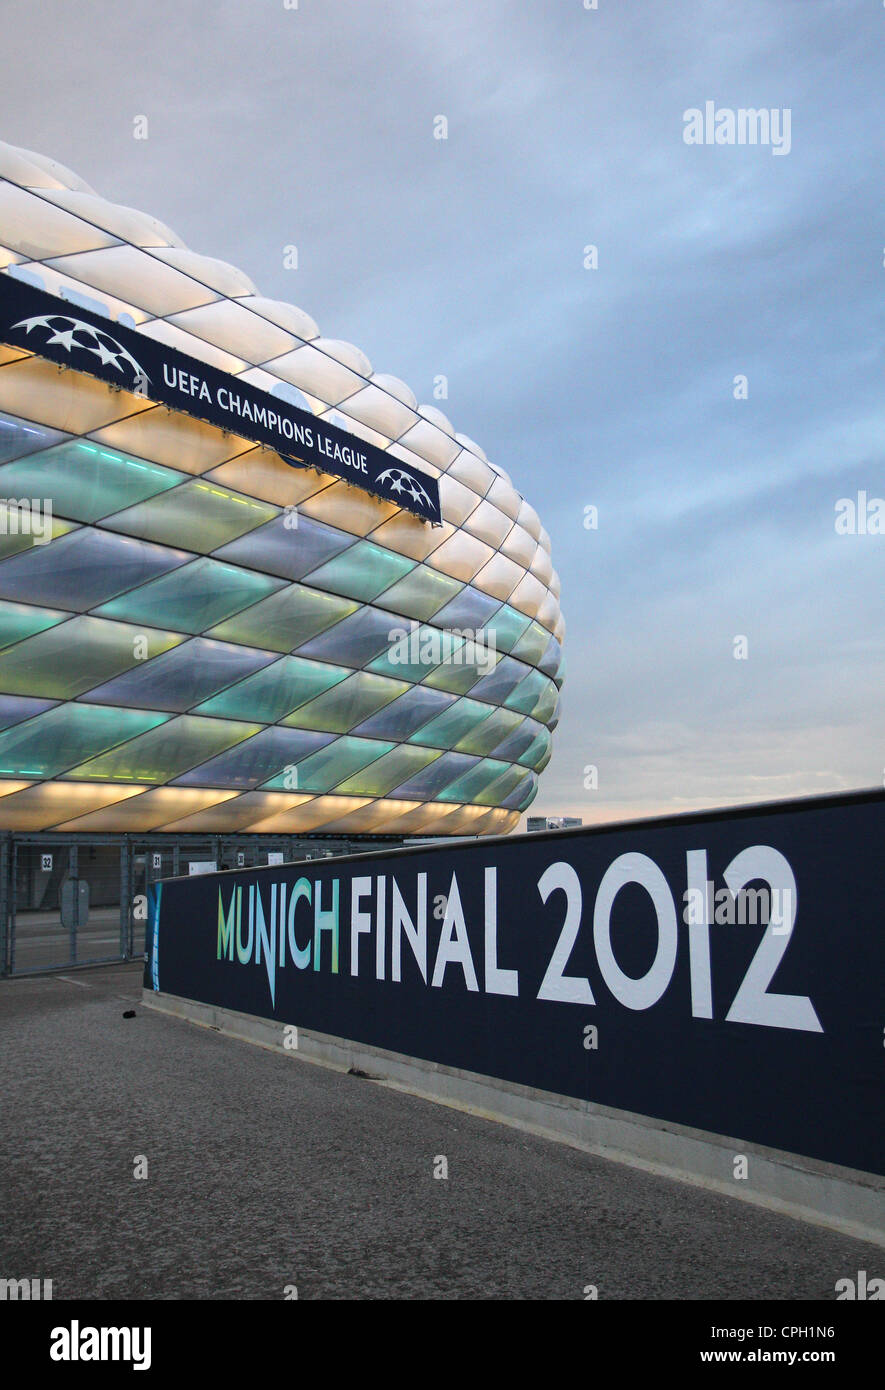 Die Allianzarena im Bild während der UEFA Champions League Finale 2012 FC  Bayern München V Chelsea Stockfotografie - Alamy